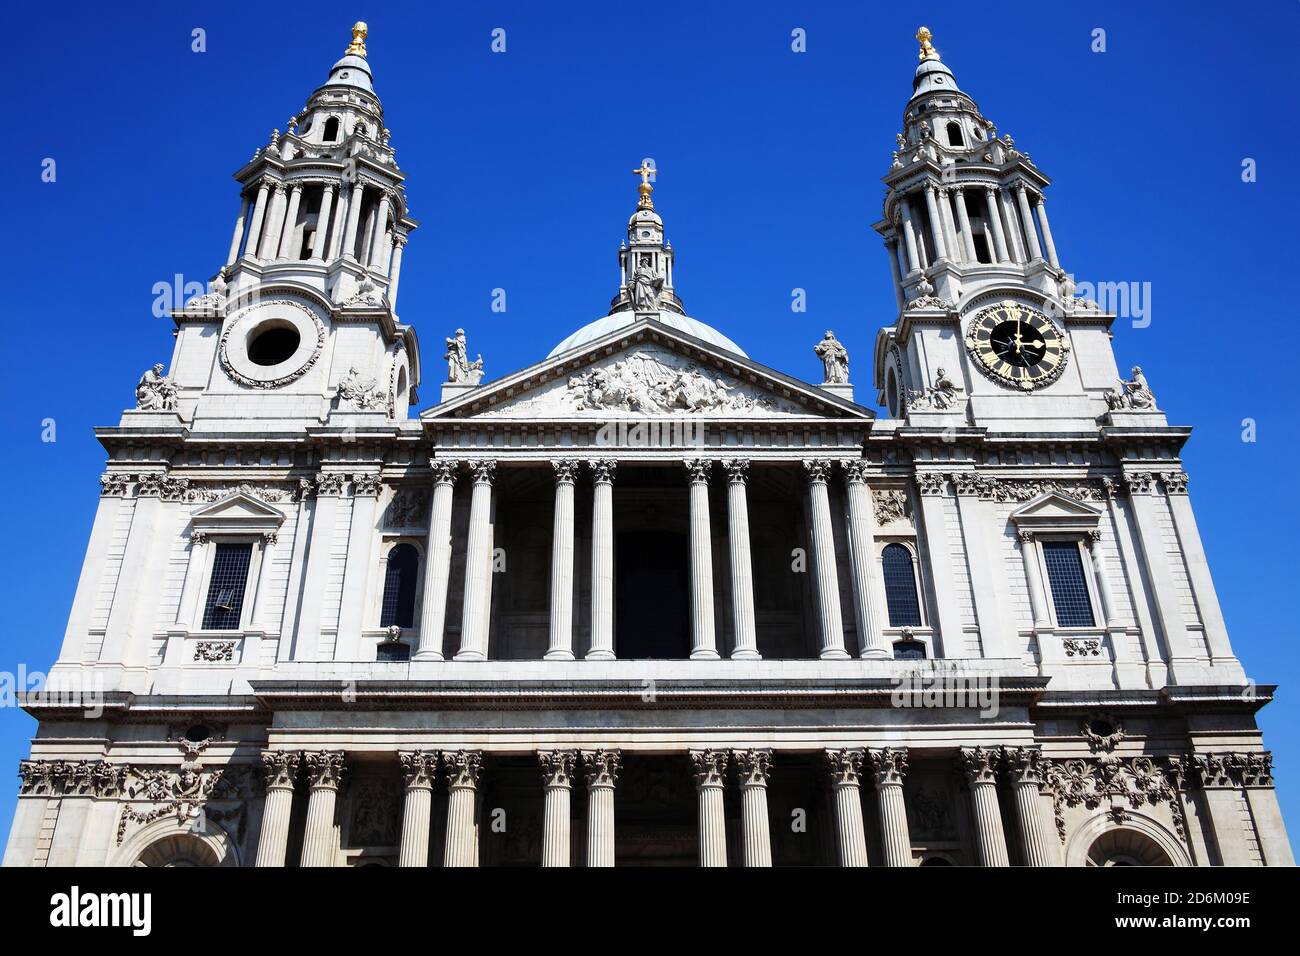 La Cattedrale di St Paul a Londra, nel Regno Unito, costruita dopo il Grande incendio di Londra del 1666, è il capolavoro di Christopher Wren e uno dei principali Att turistici Foto Stock